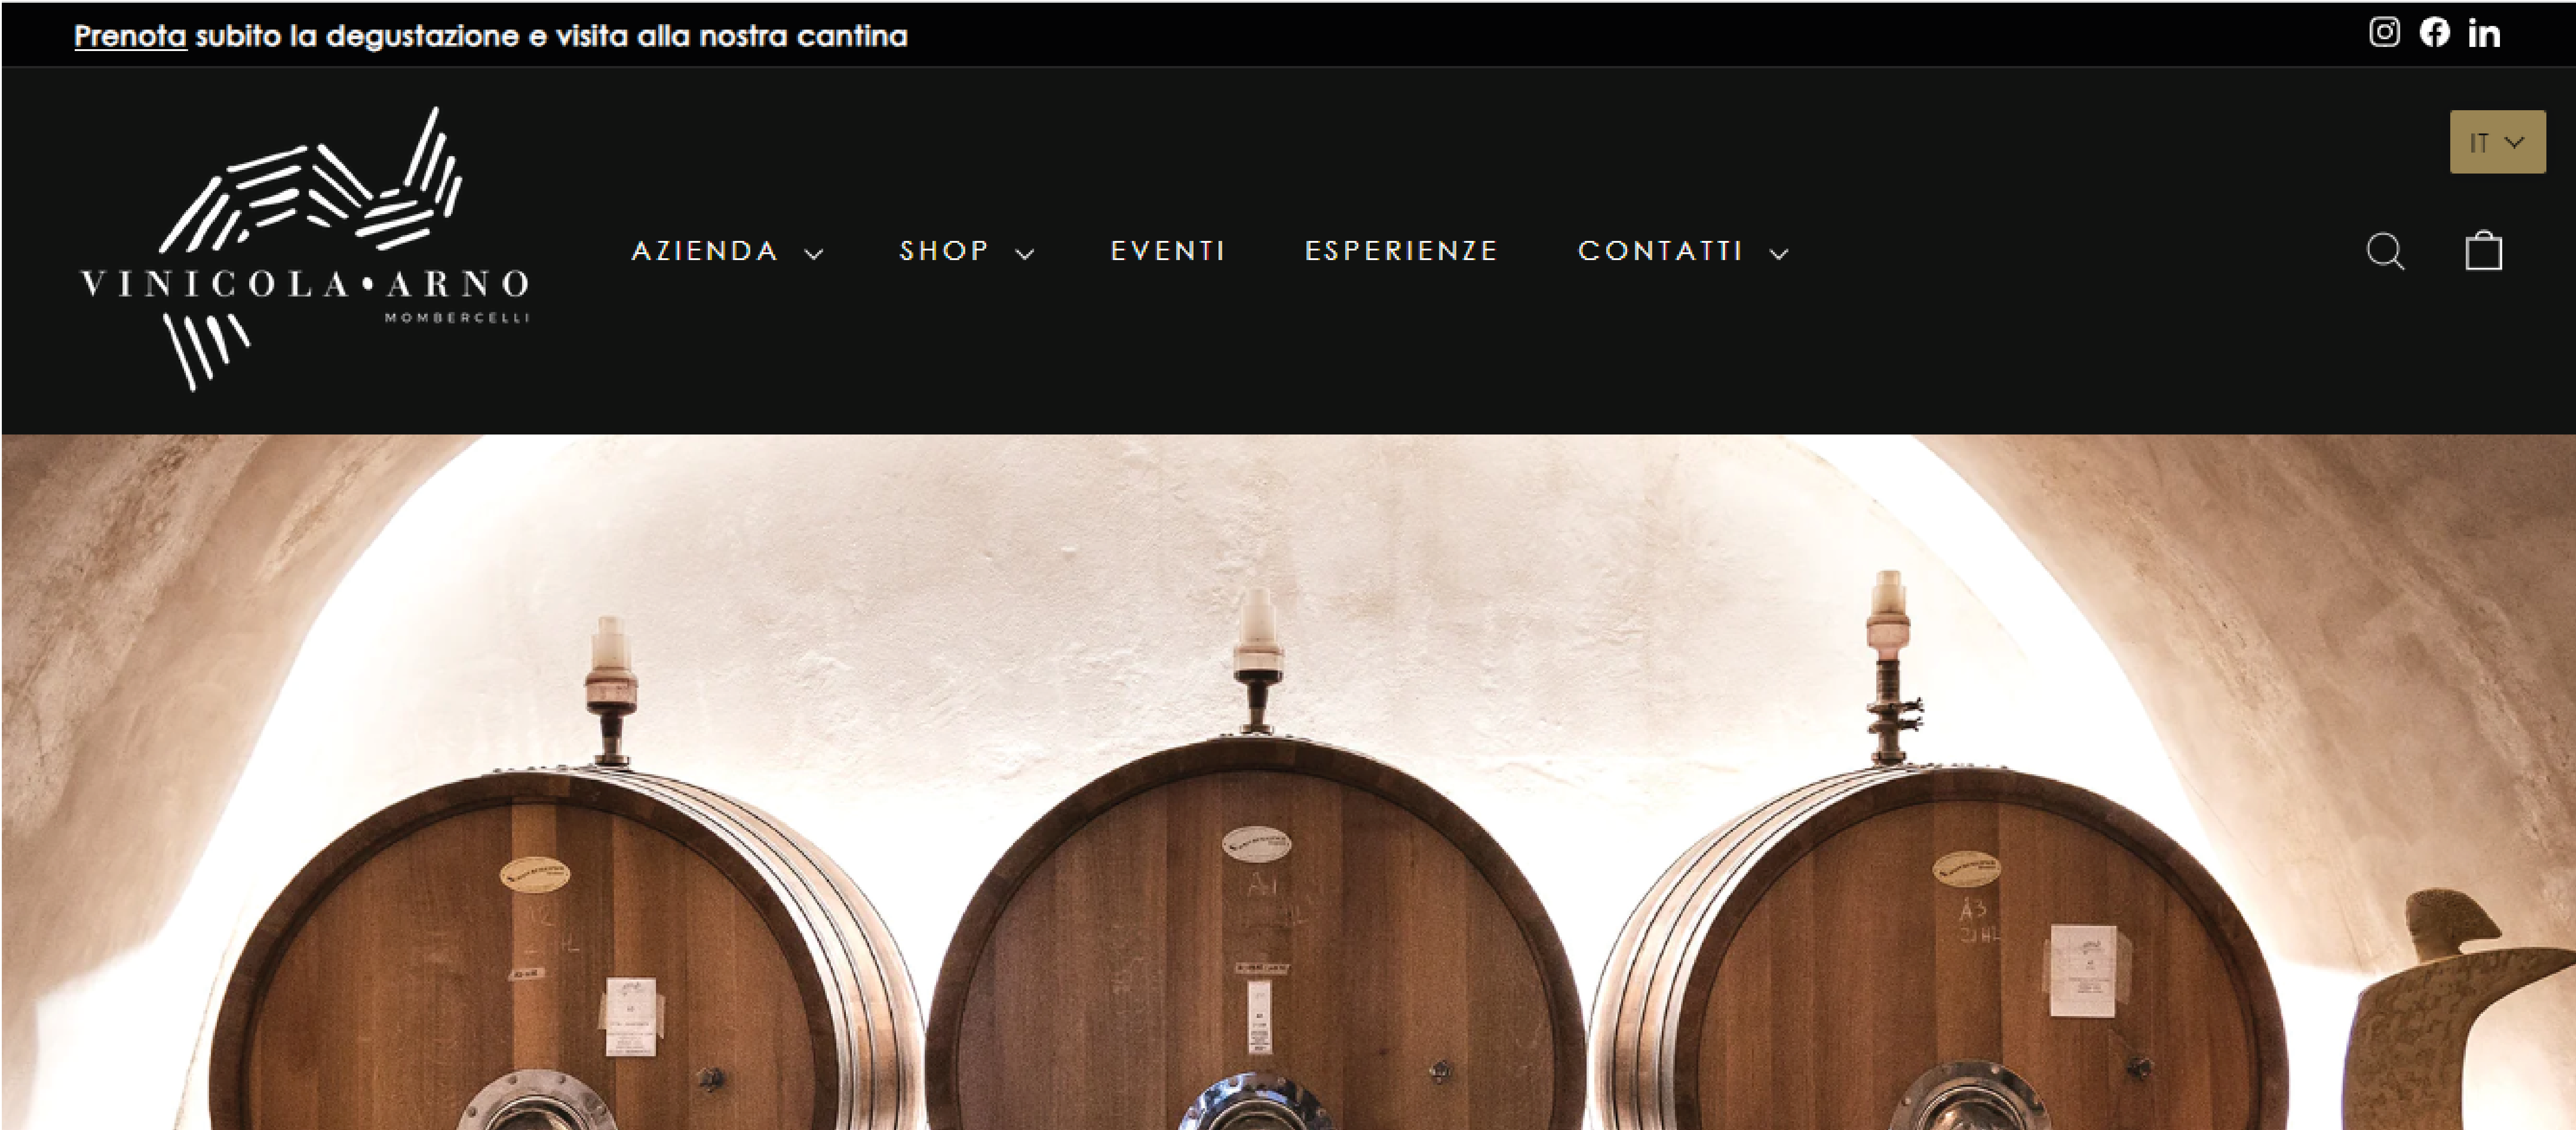 Sito e-commerce vinicolaarno.com